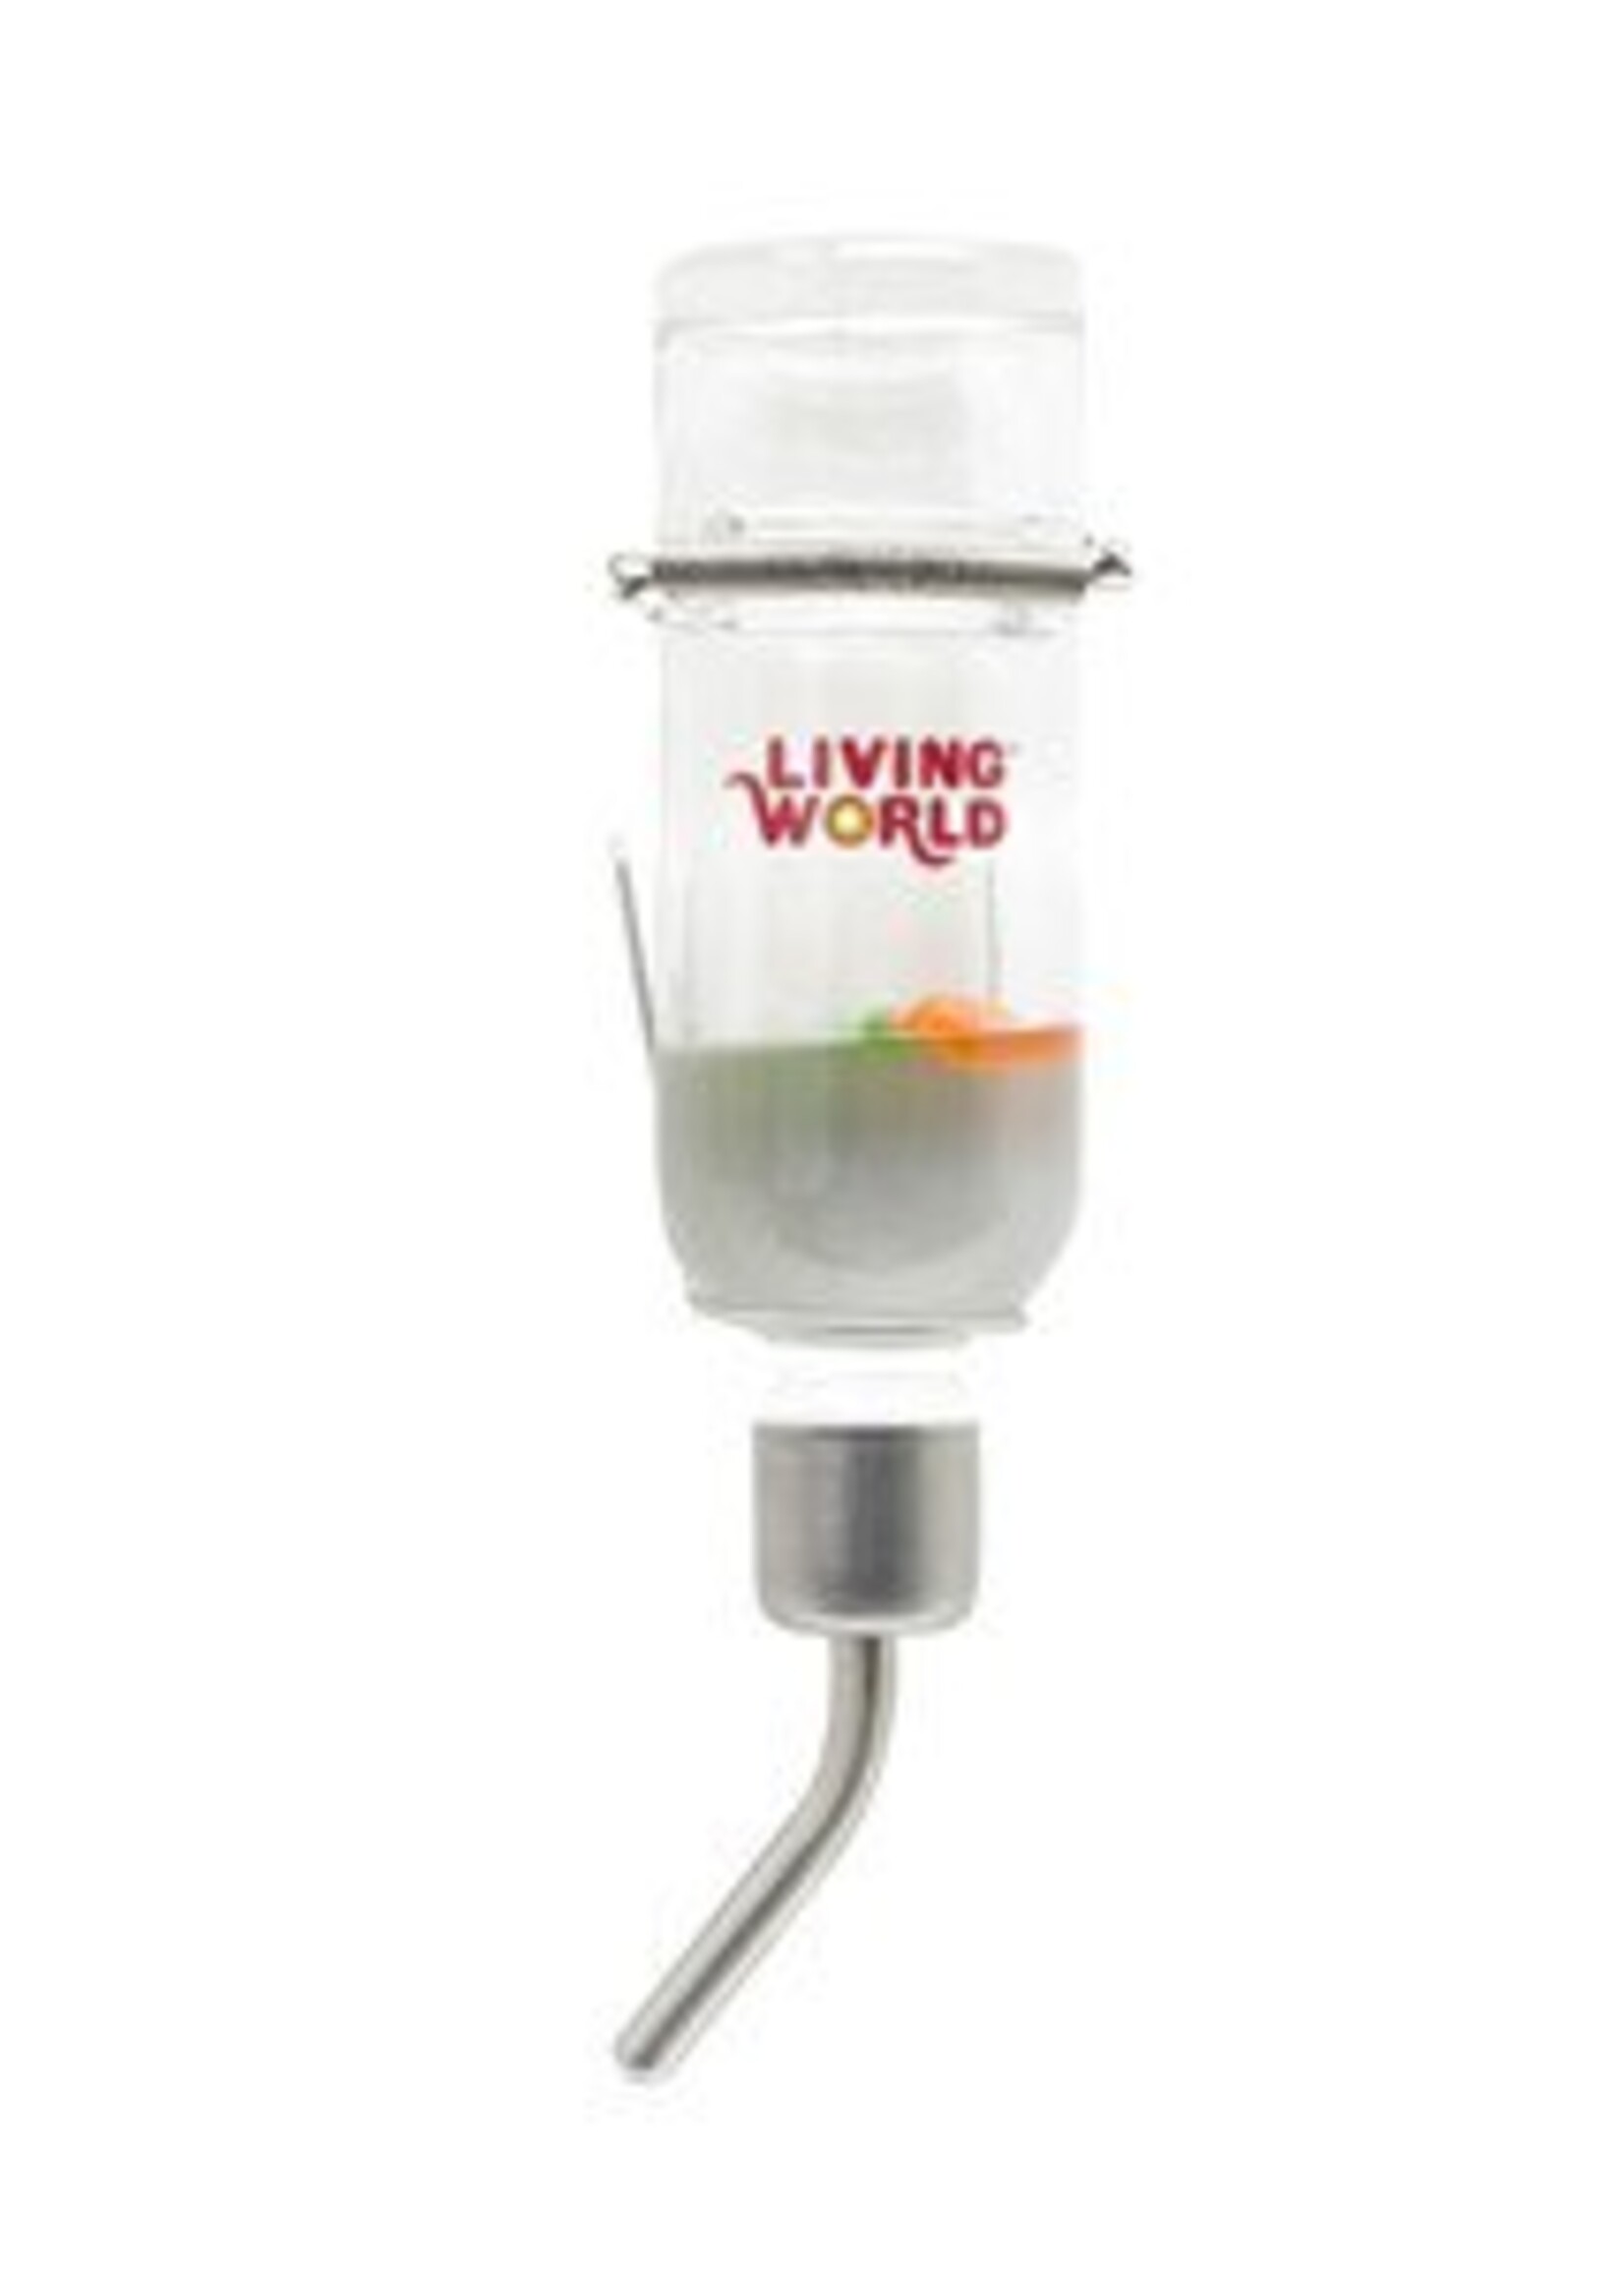 Living World Living World Eco + Water Bottle - 6oz